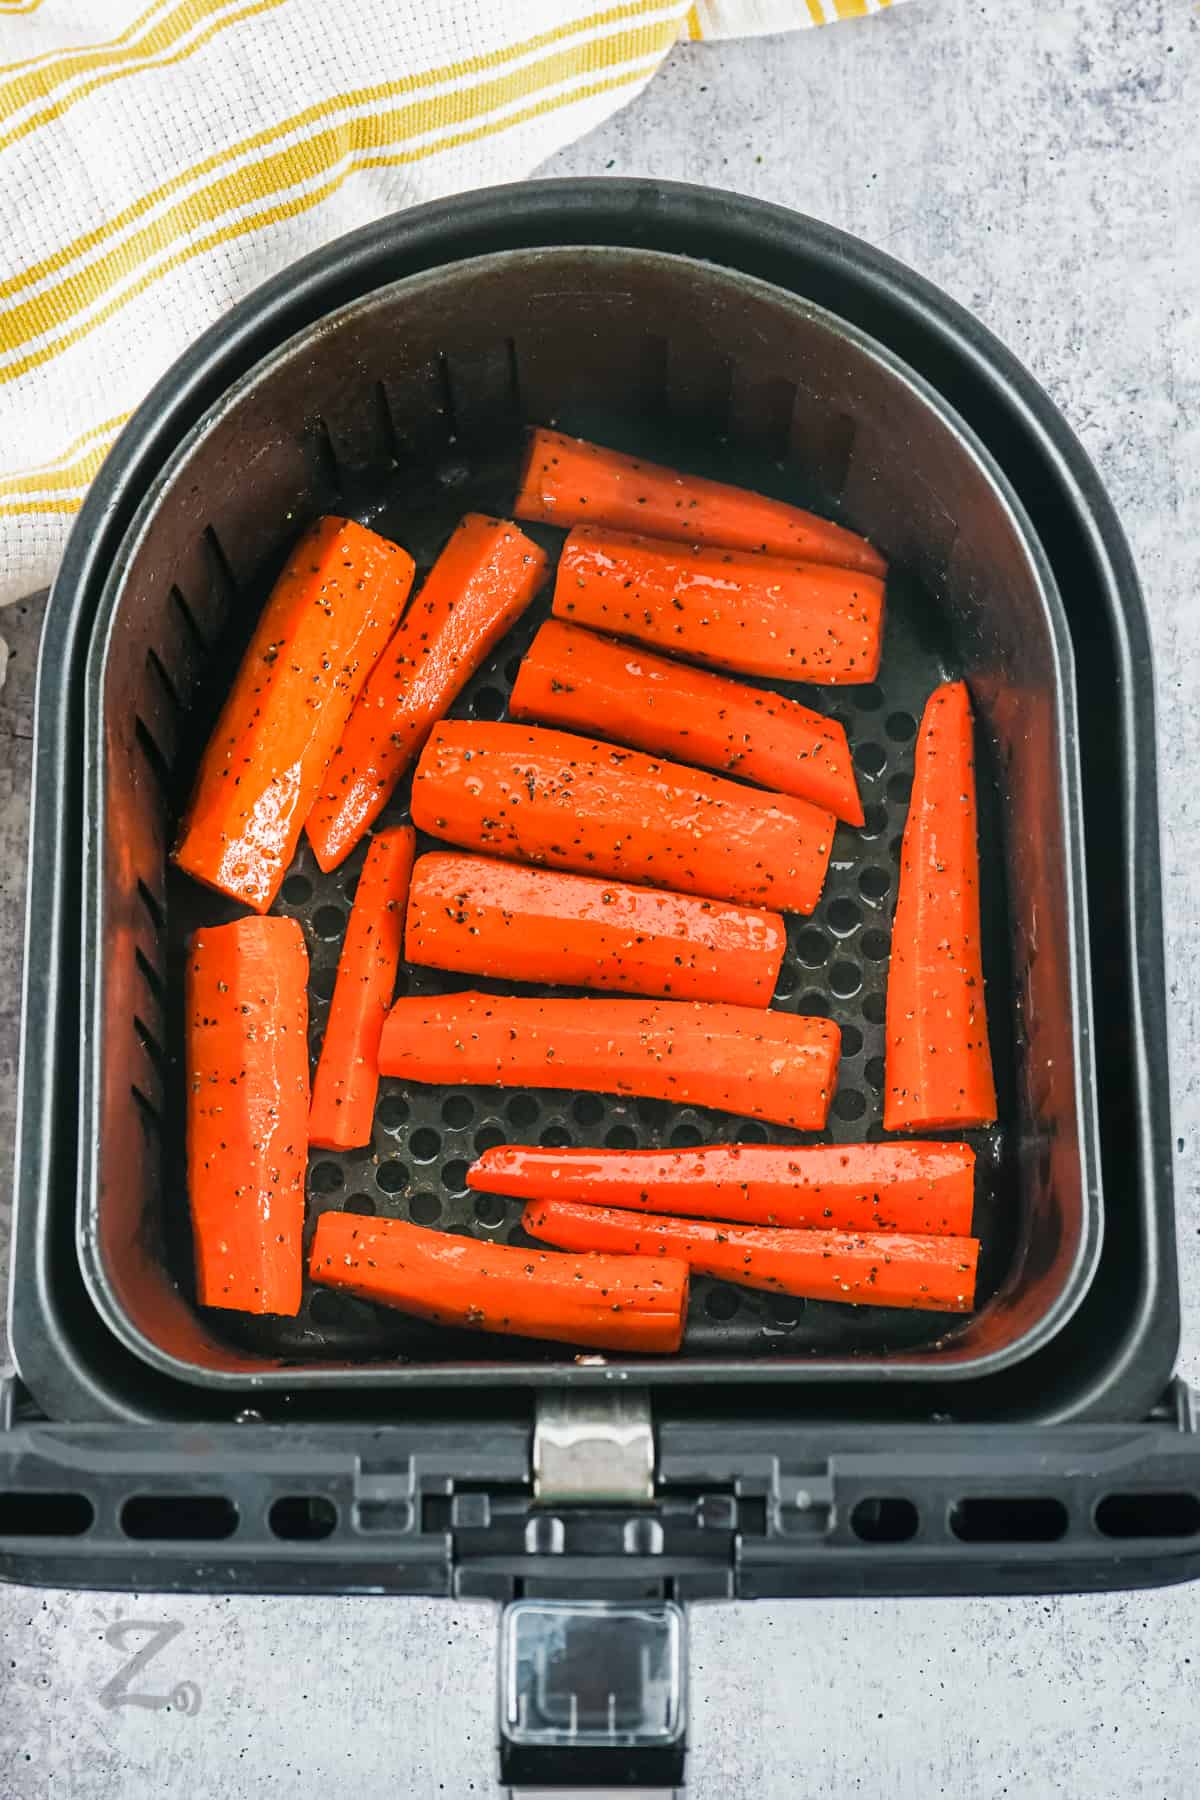 seasoned carrots in fryer to make Air Fryer Carrots